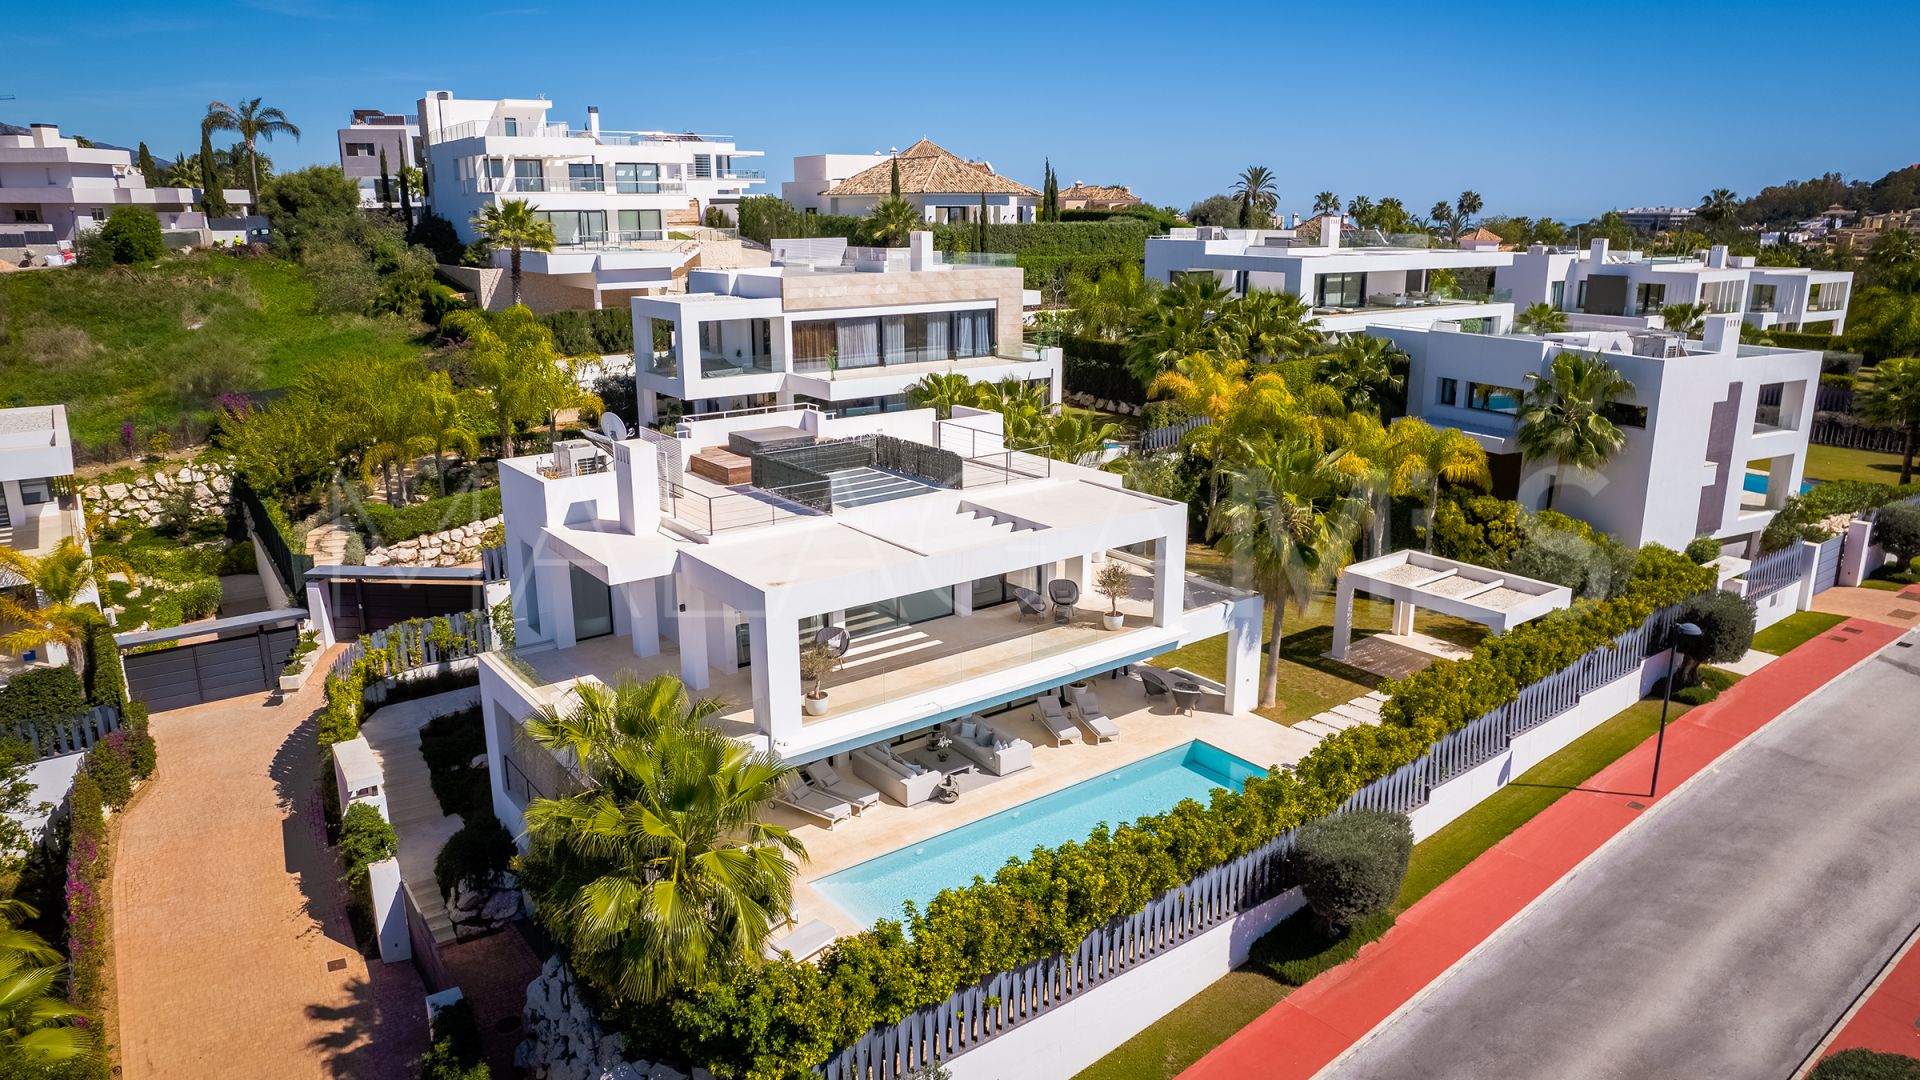 5 bedrooms villa in Los Olivos for sale